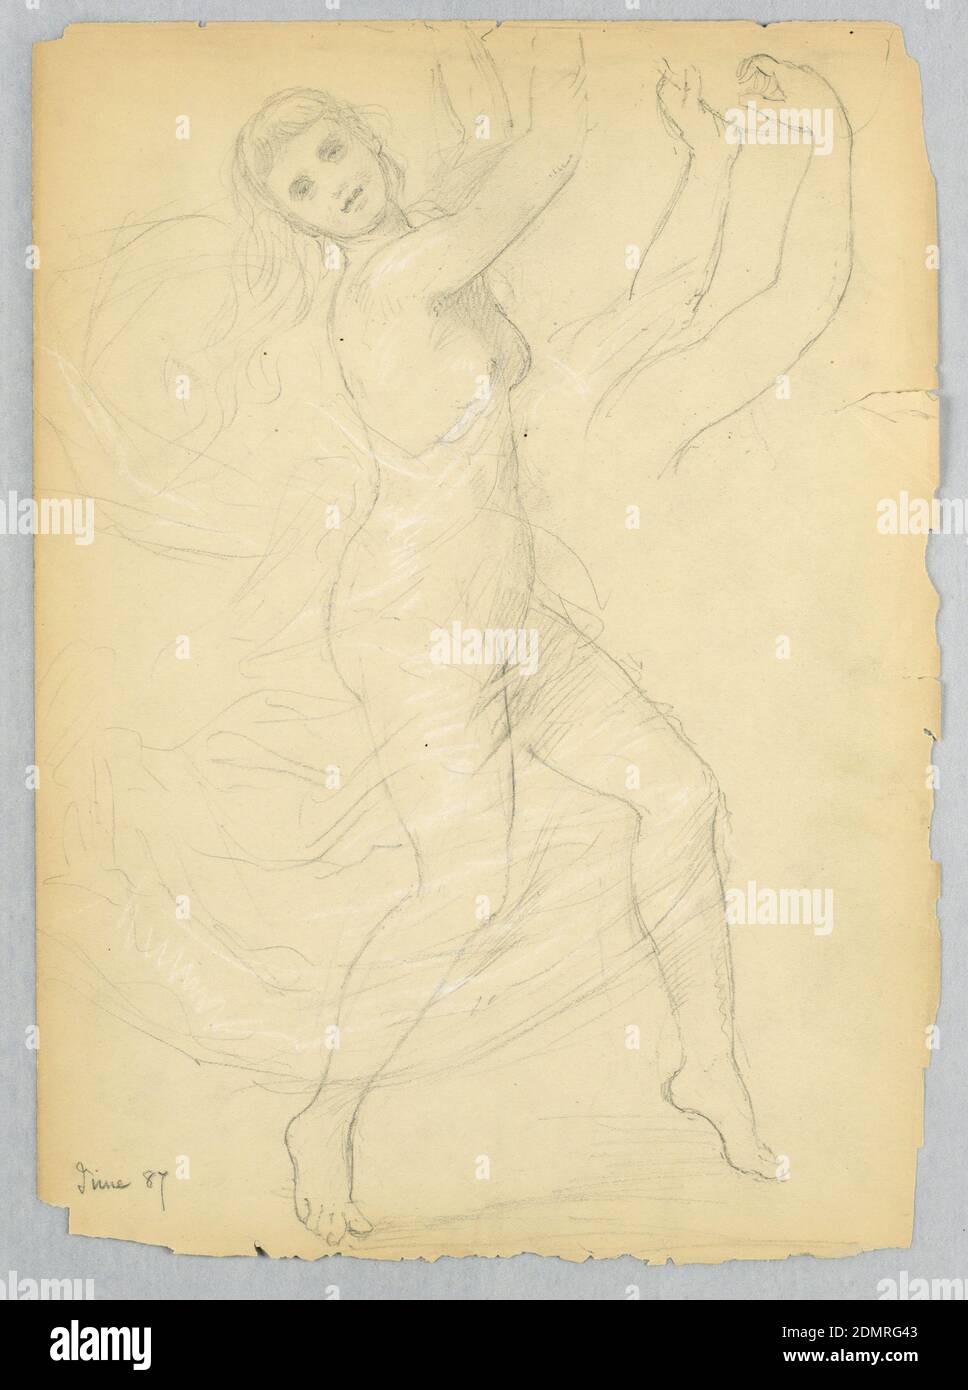 Croquis pour un Bacchante, Daniel Huntington, américain, 1816–1906, Graphite, craie blanche sur papier de vélin crème, danseur à profil droit, sous un voile. Étude des bras, des mains et d'une partie d'un tambourin, en haut à droite. Verso: Figure similaire, mais orientée vers la gauche, sans voile., Etats-Unis, juin 1887, figures, dessin Banque D'Images